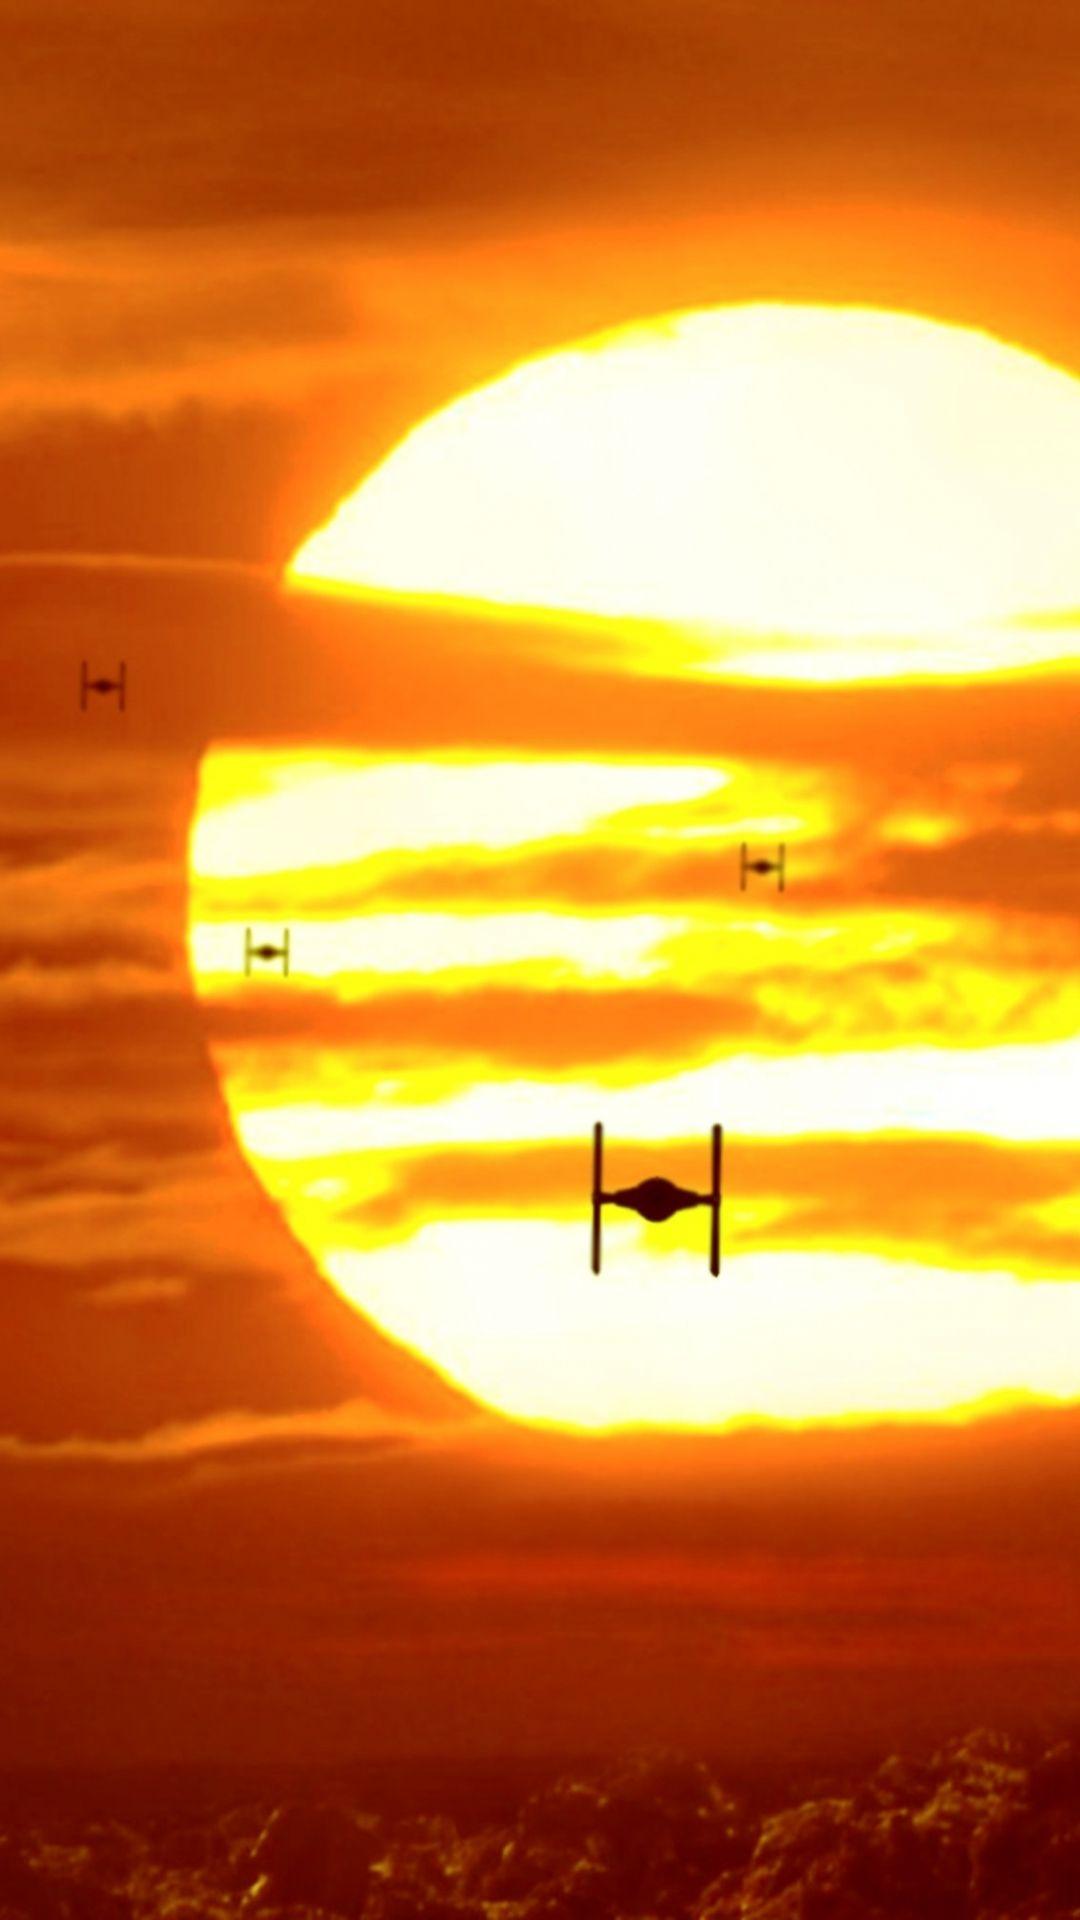 Movie Star Wars Episode VII: The Force Awakens Star Wars Tie